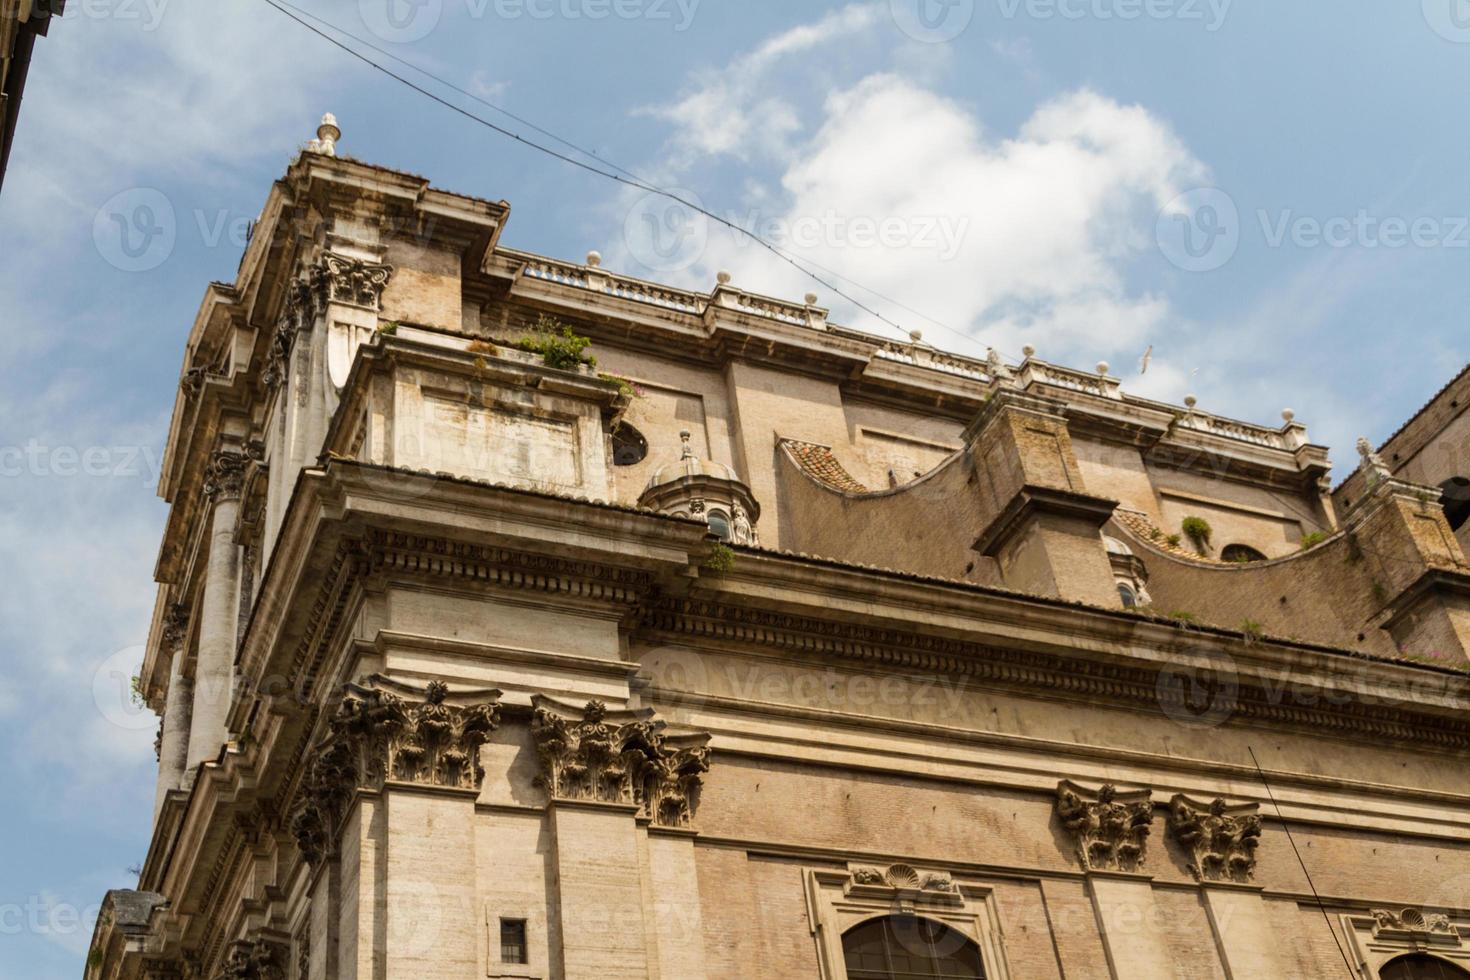 Roma, Italia. particolari architettonici tipici della città vecchia foto